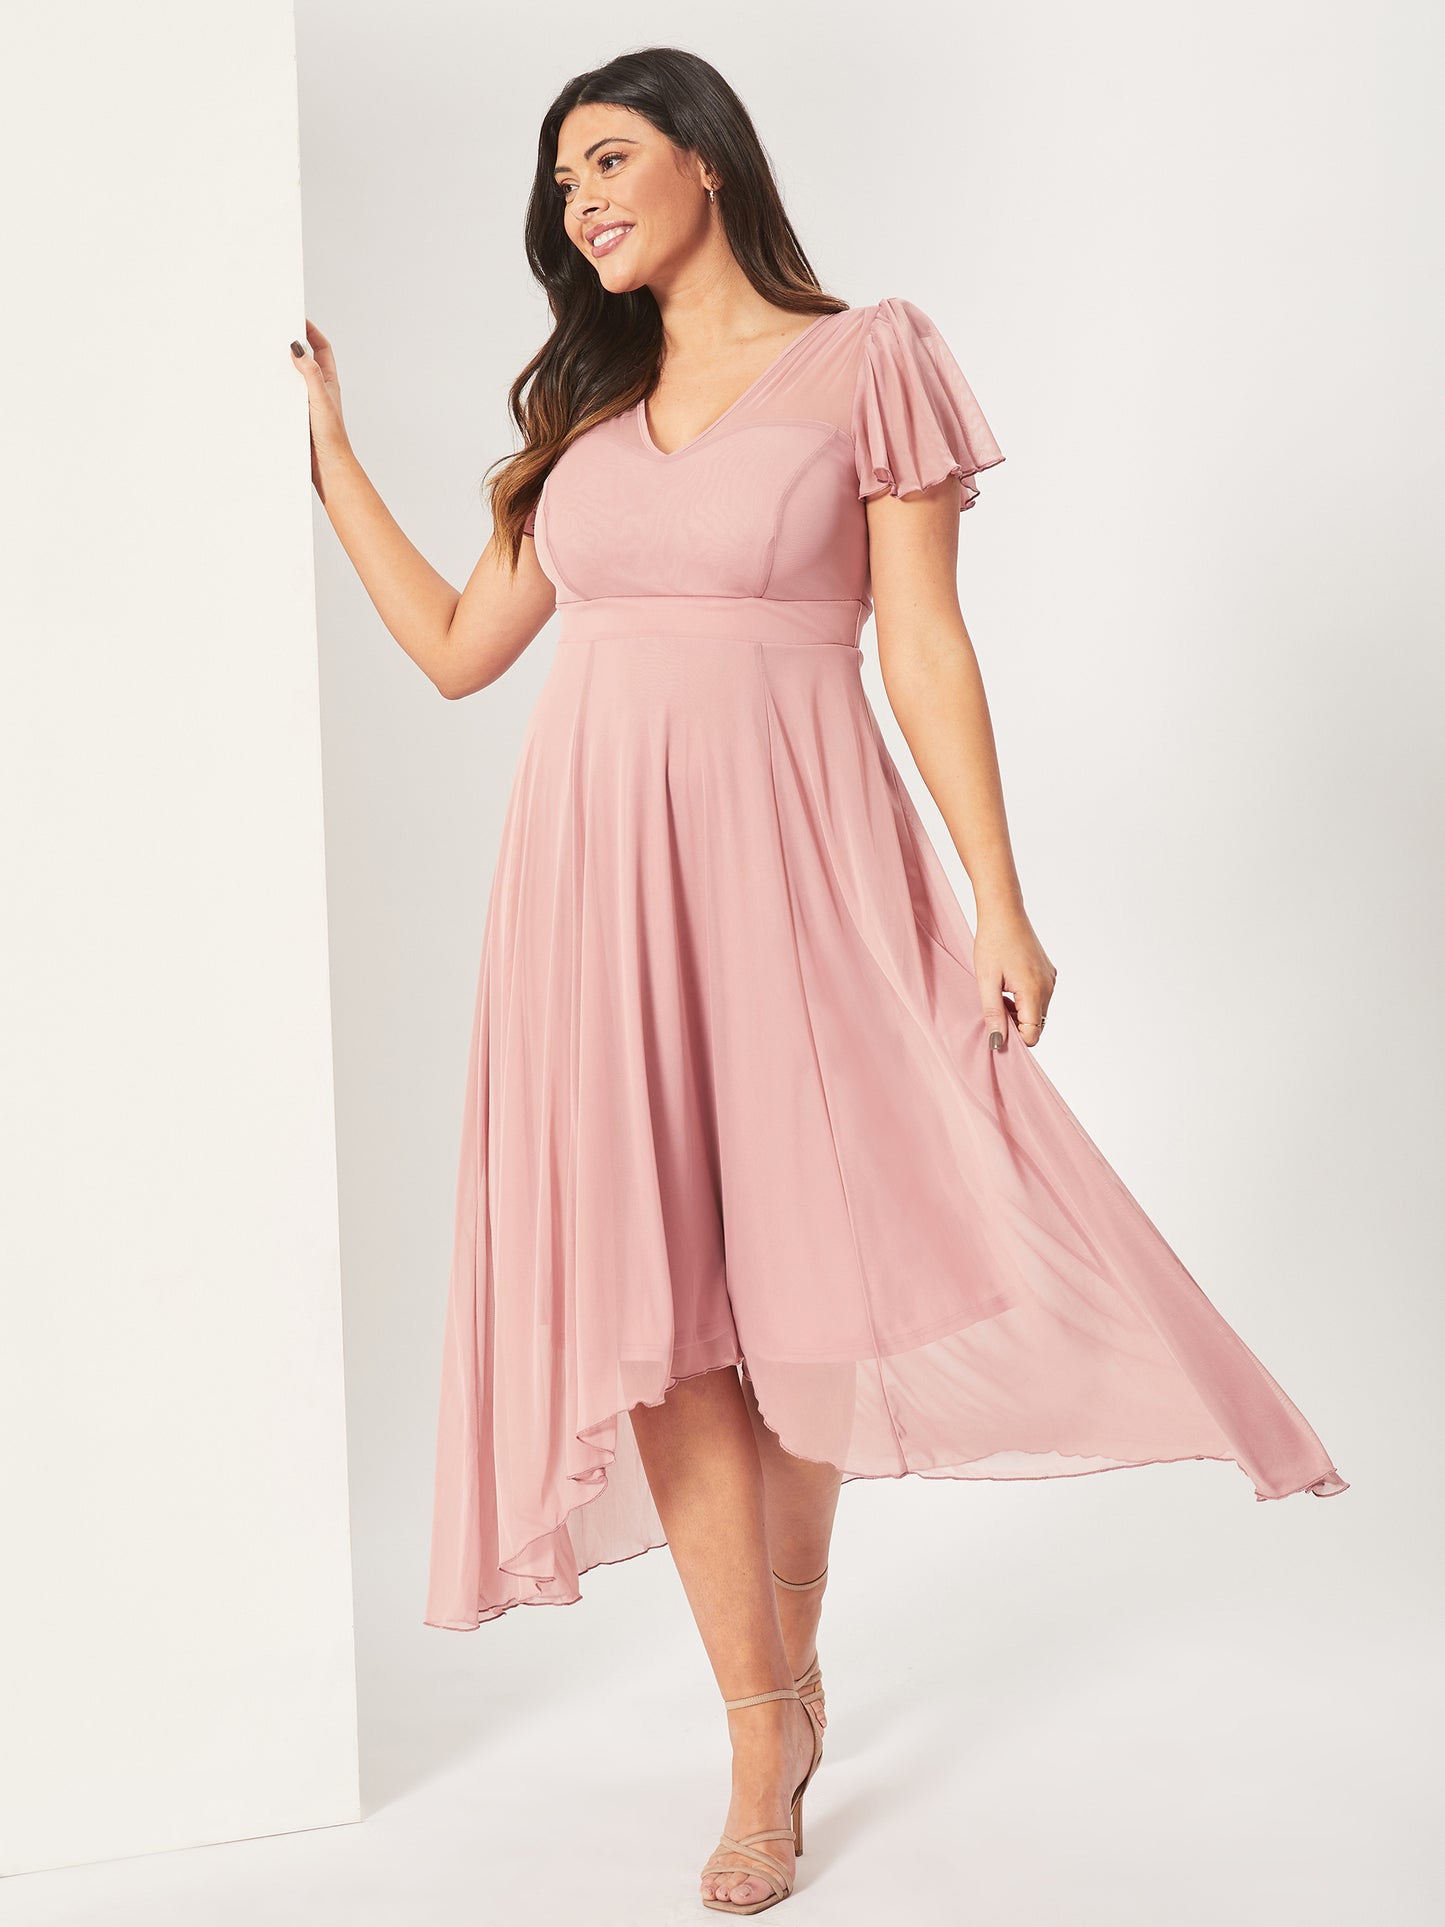 Tilly Pink Blush Print Angel Sleeve Sweetheart Dress – Scarlett & Jo